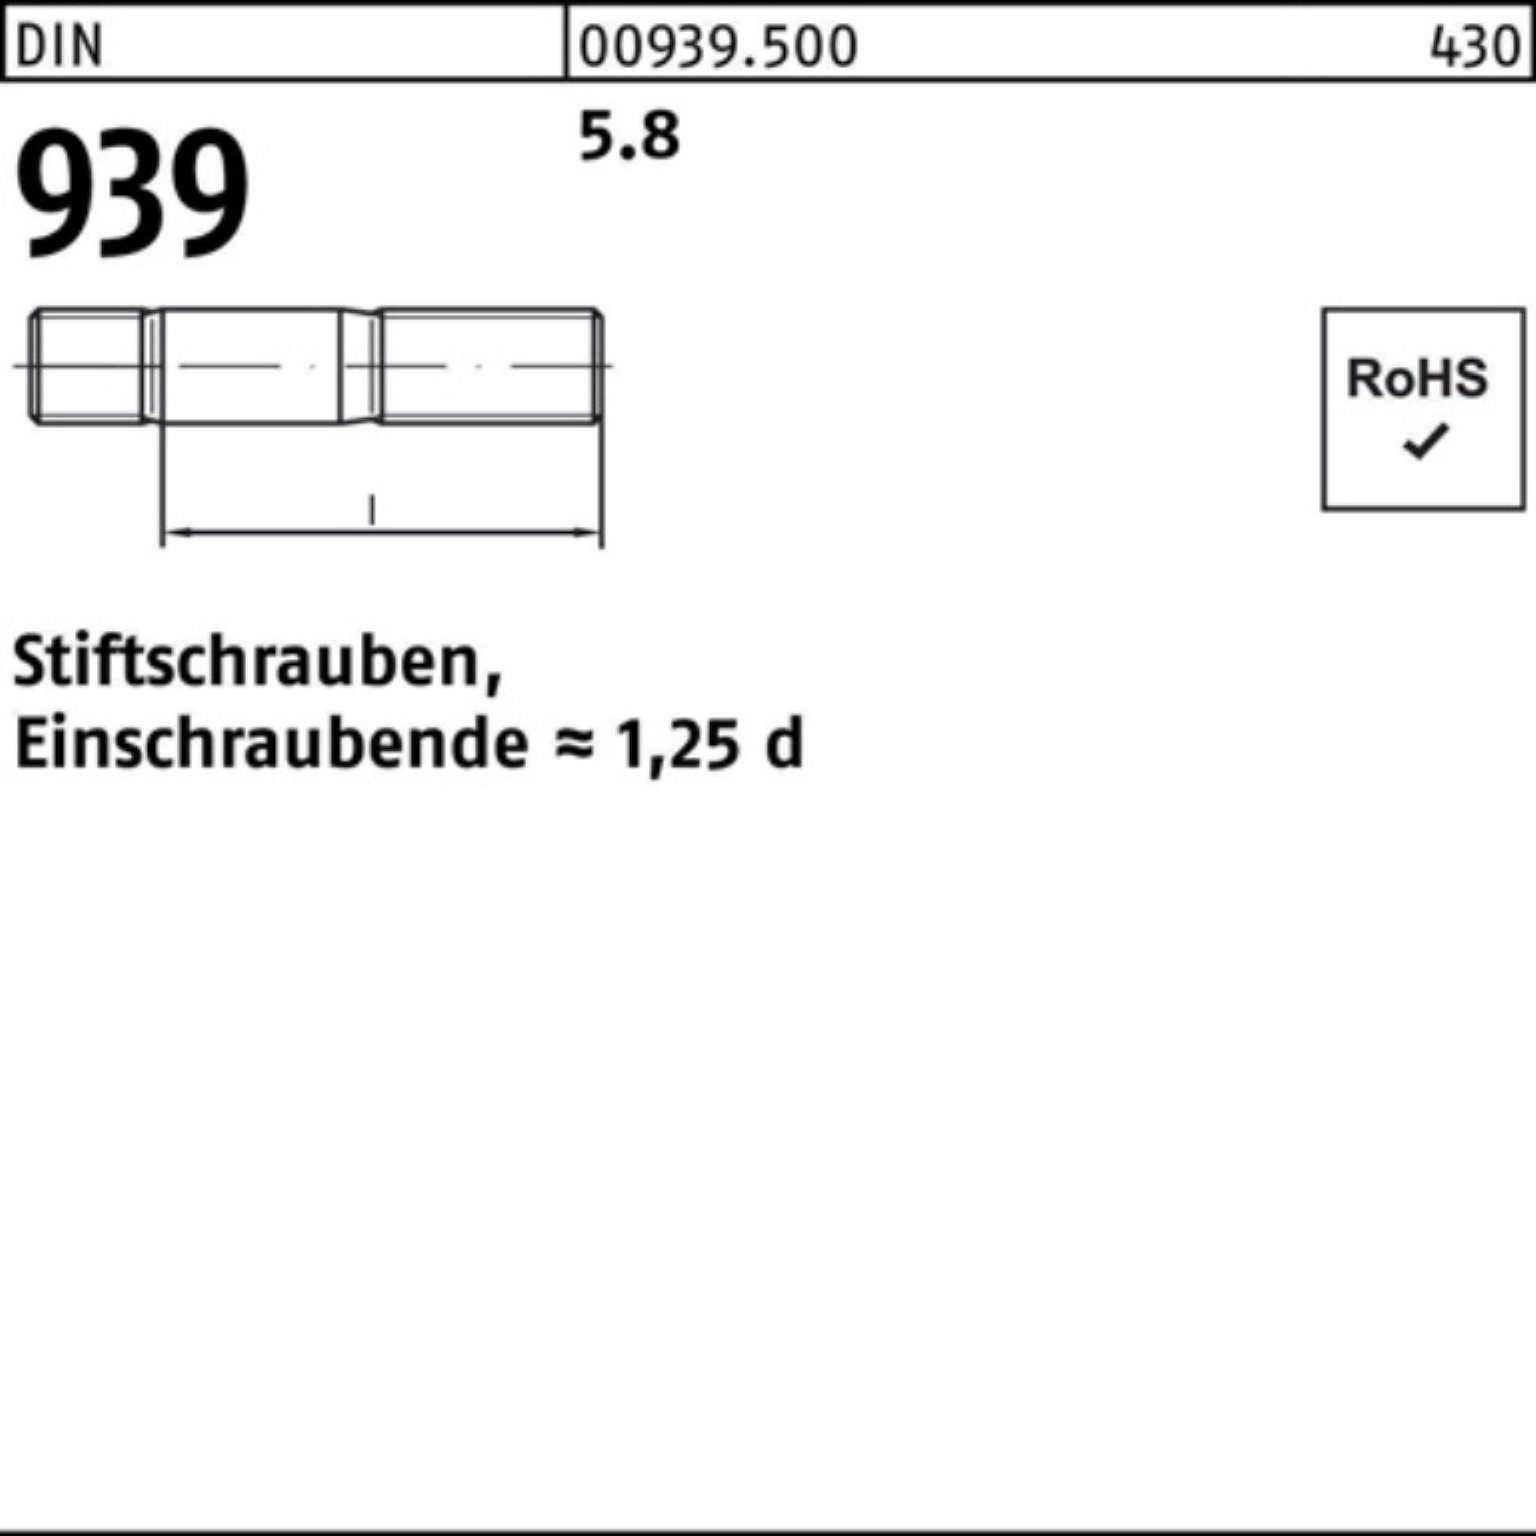 50 5.8 Pack M10x Stiftschraube 100er Einschraubende=1,25d Reyher Stiftschraube 120 DIN 939